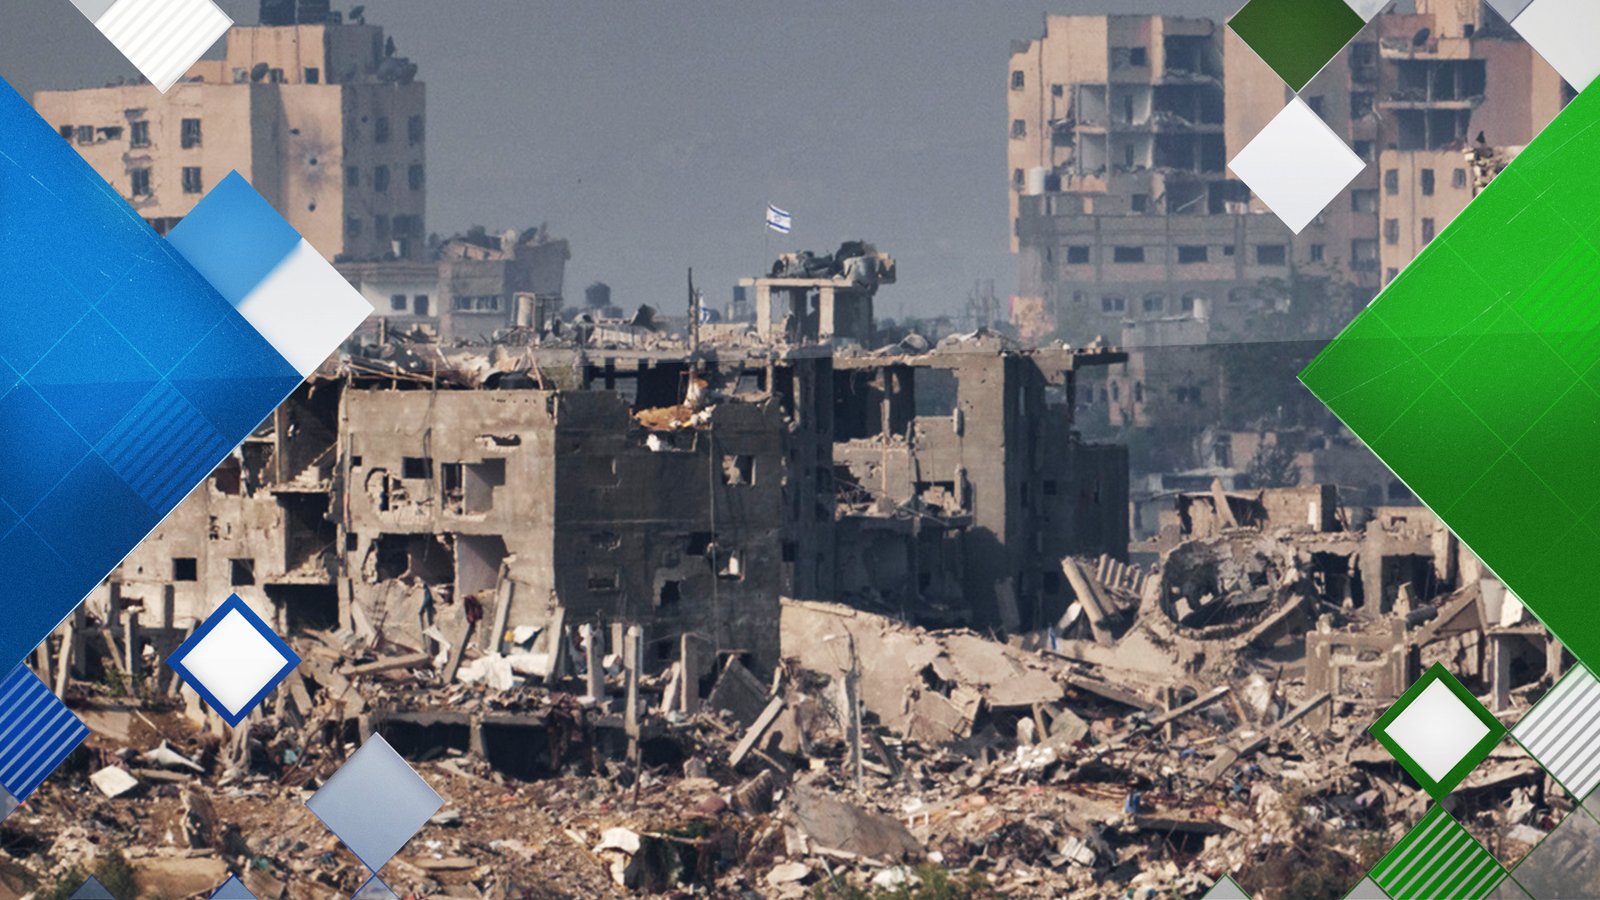 Примирието е повратна точка в конфликта в Газа - но може ли Хамас да е на ръба да вземе инициативата?